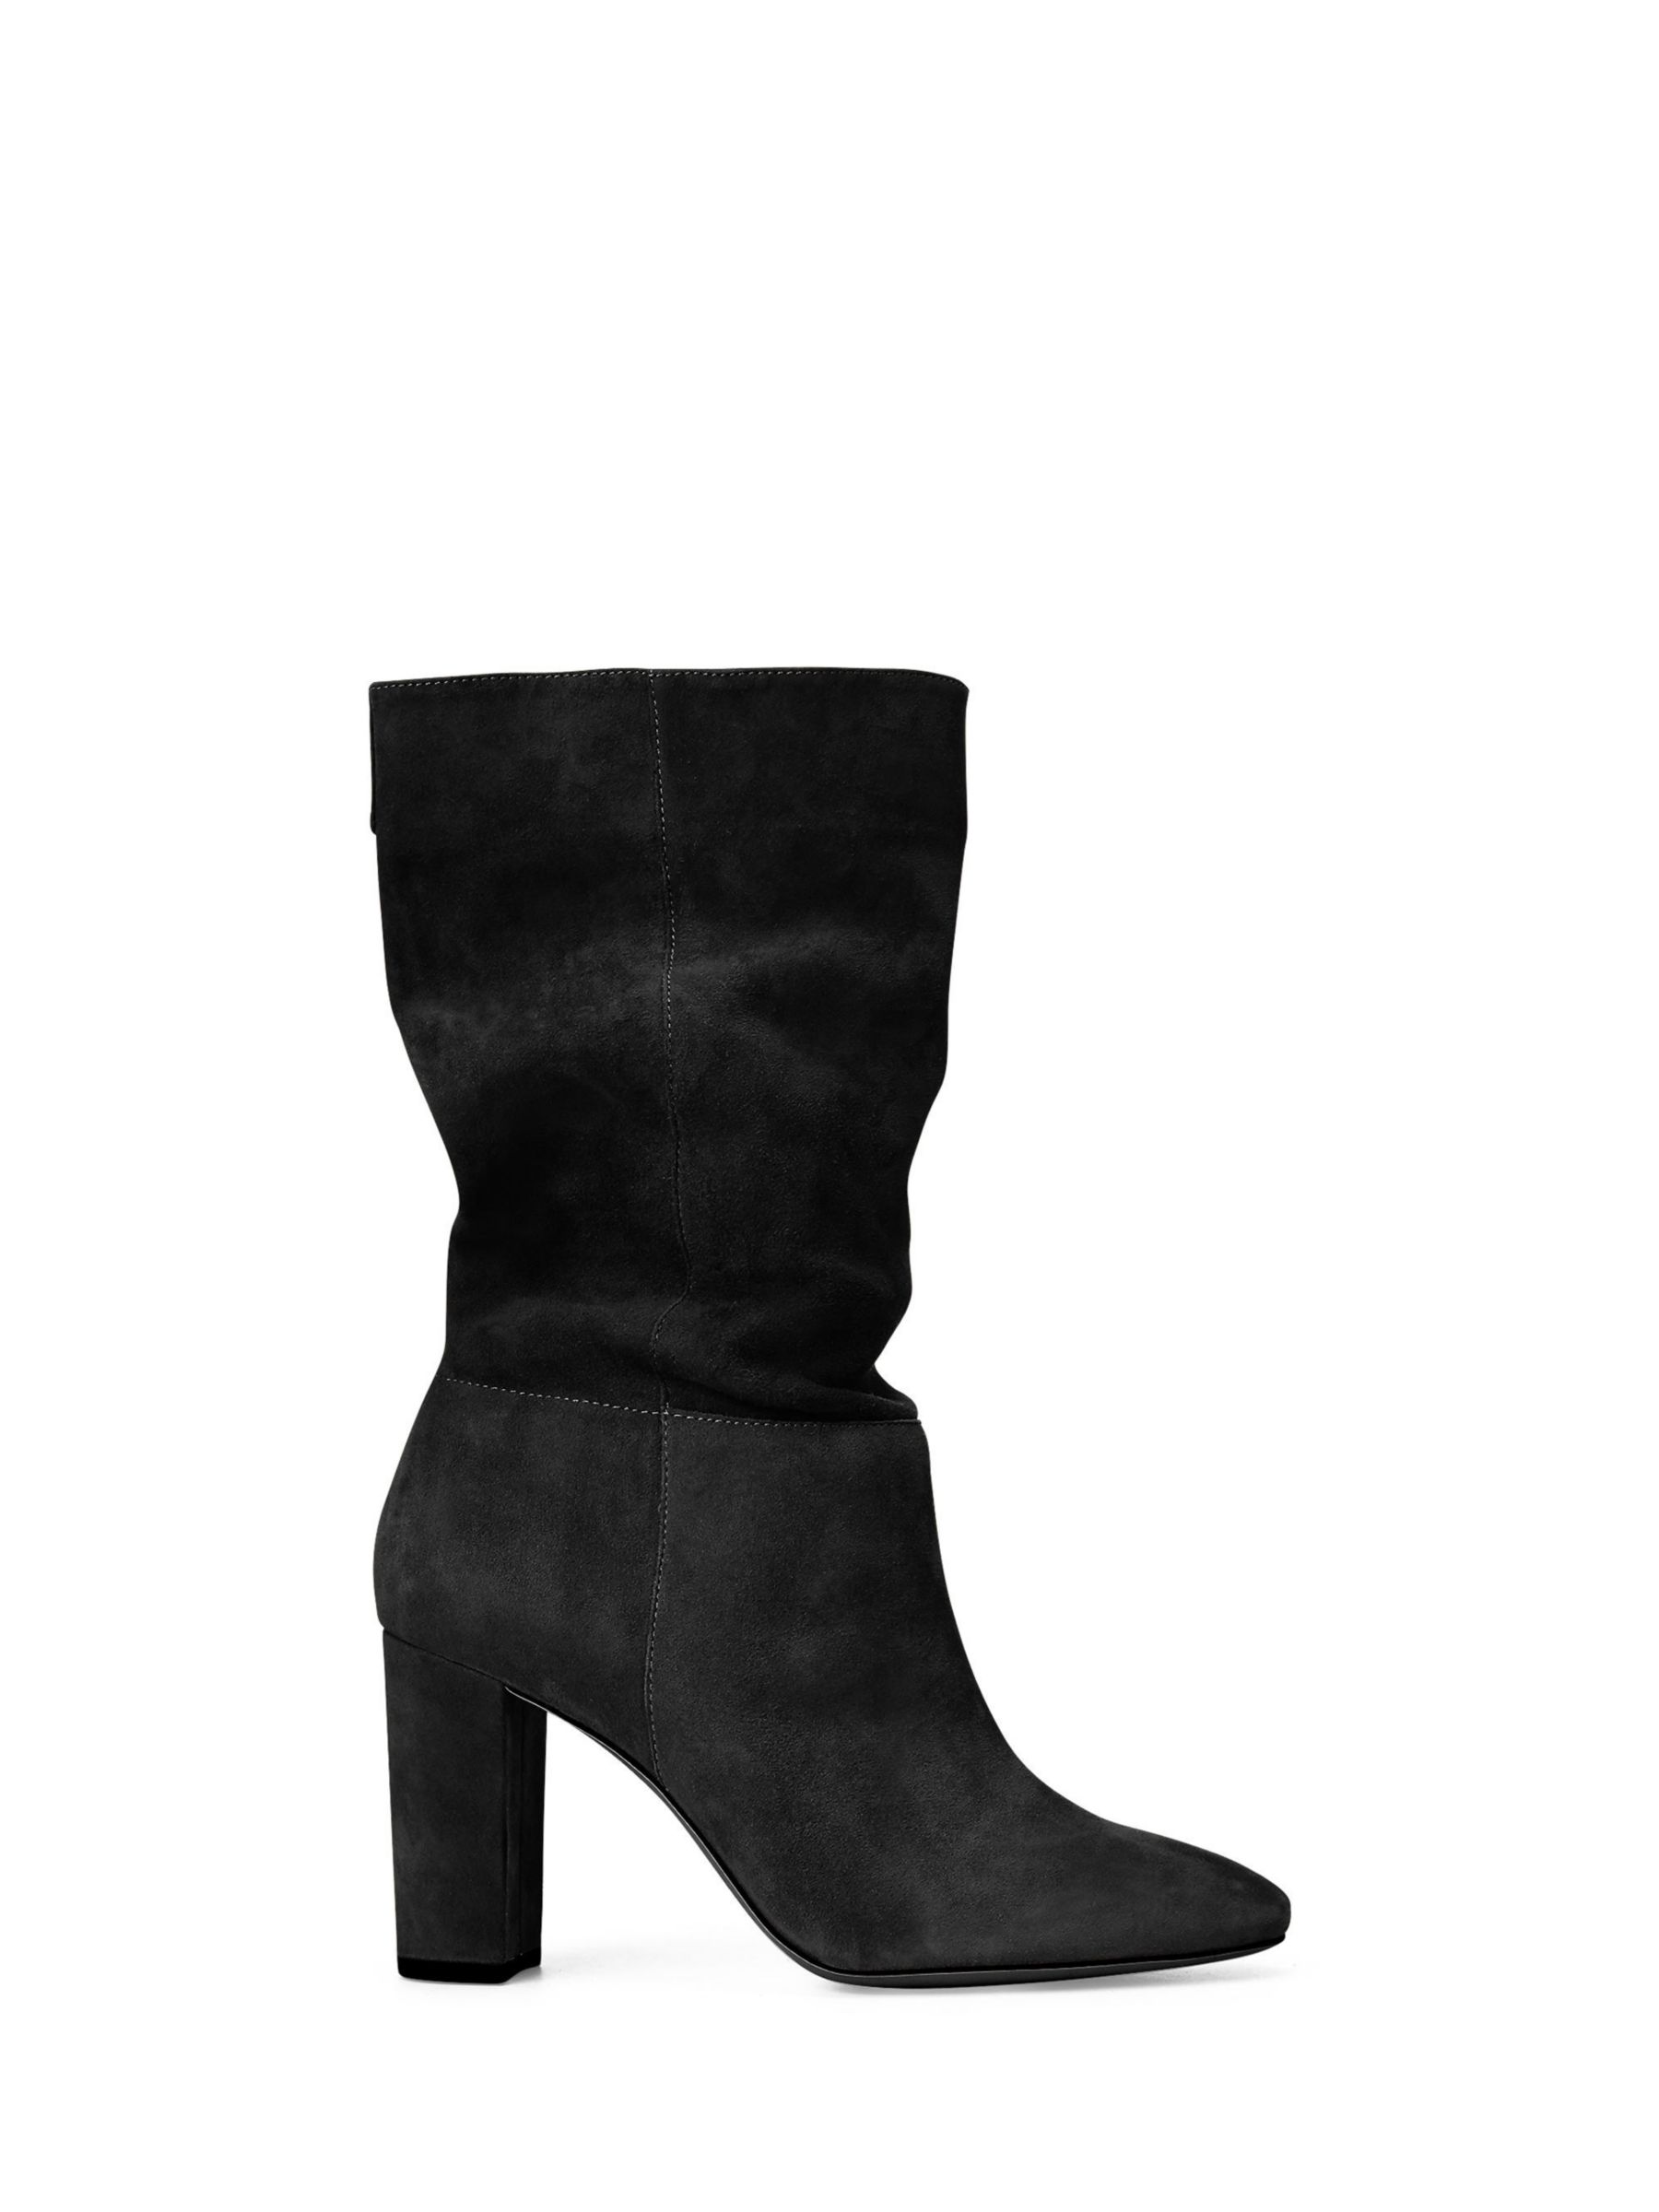 Lauren Ralph Lauren Slouch Suede Calf Boots, Black